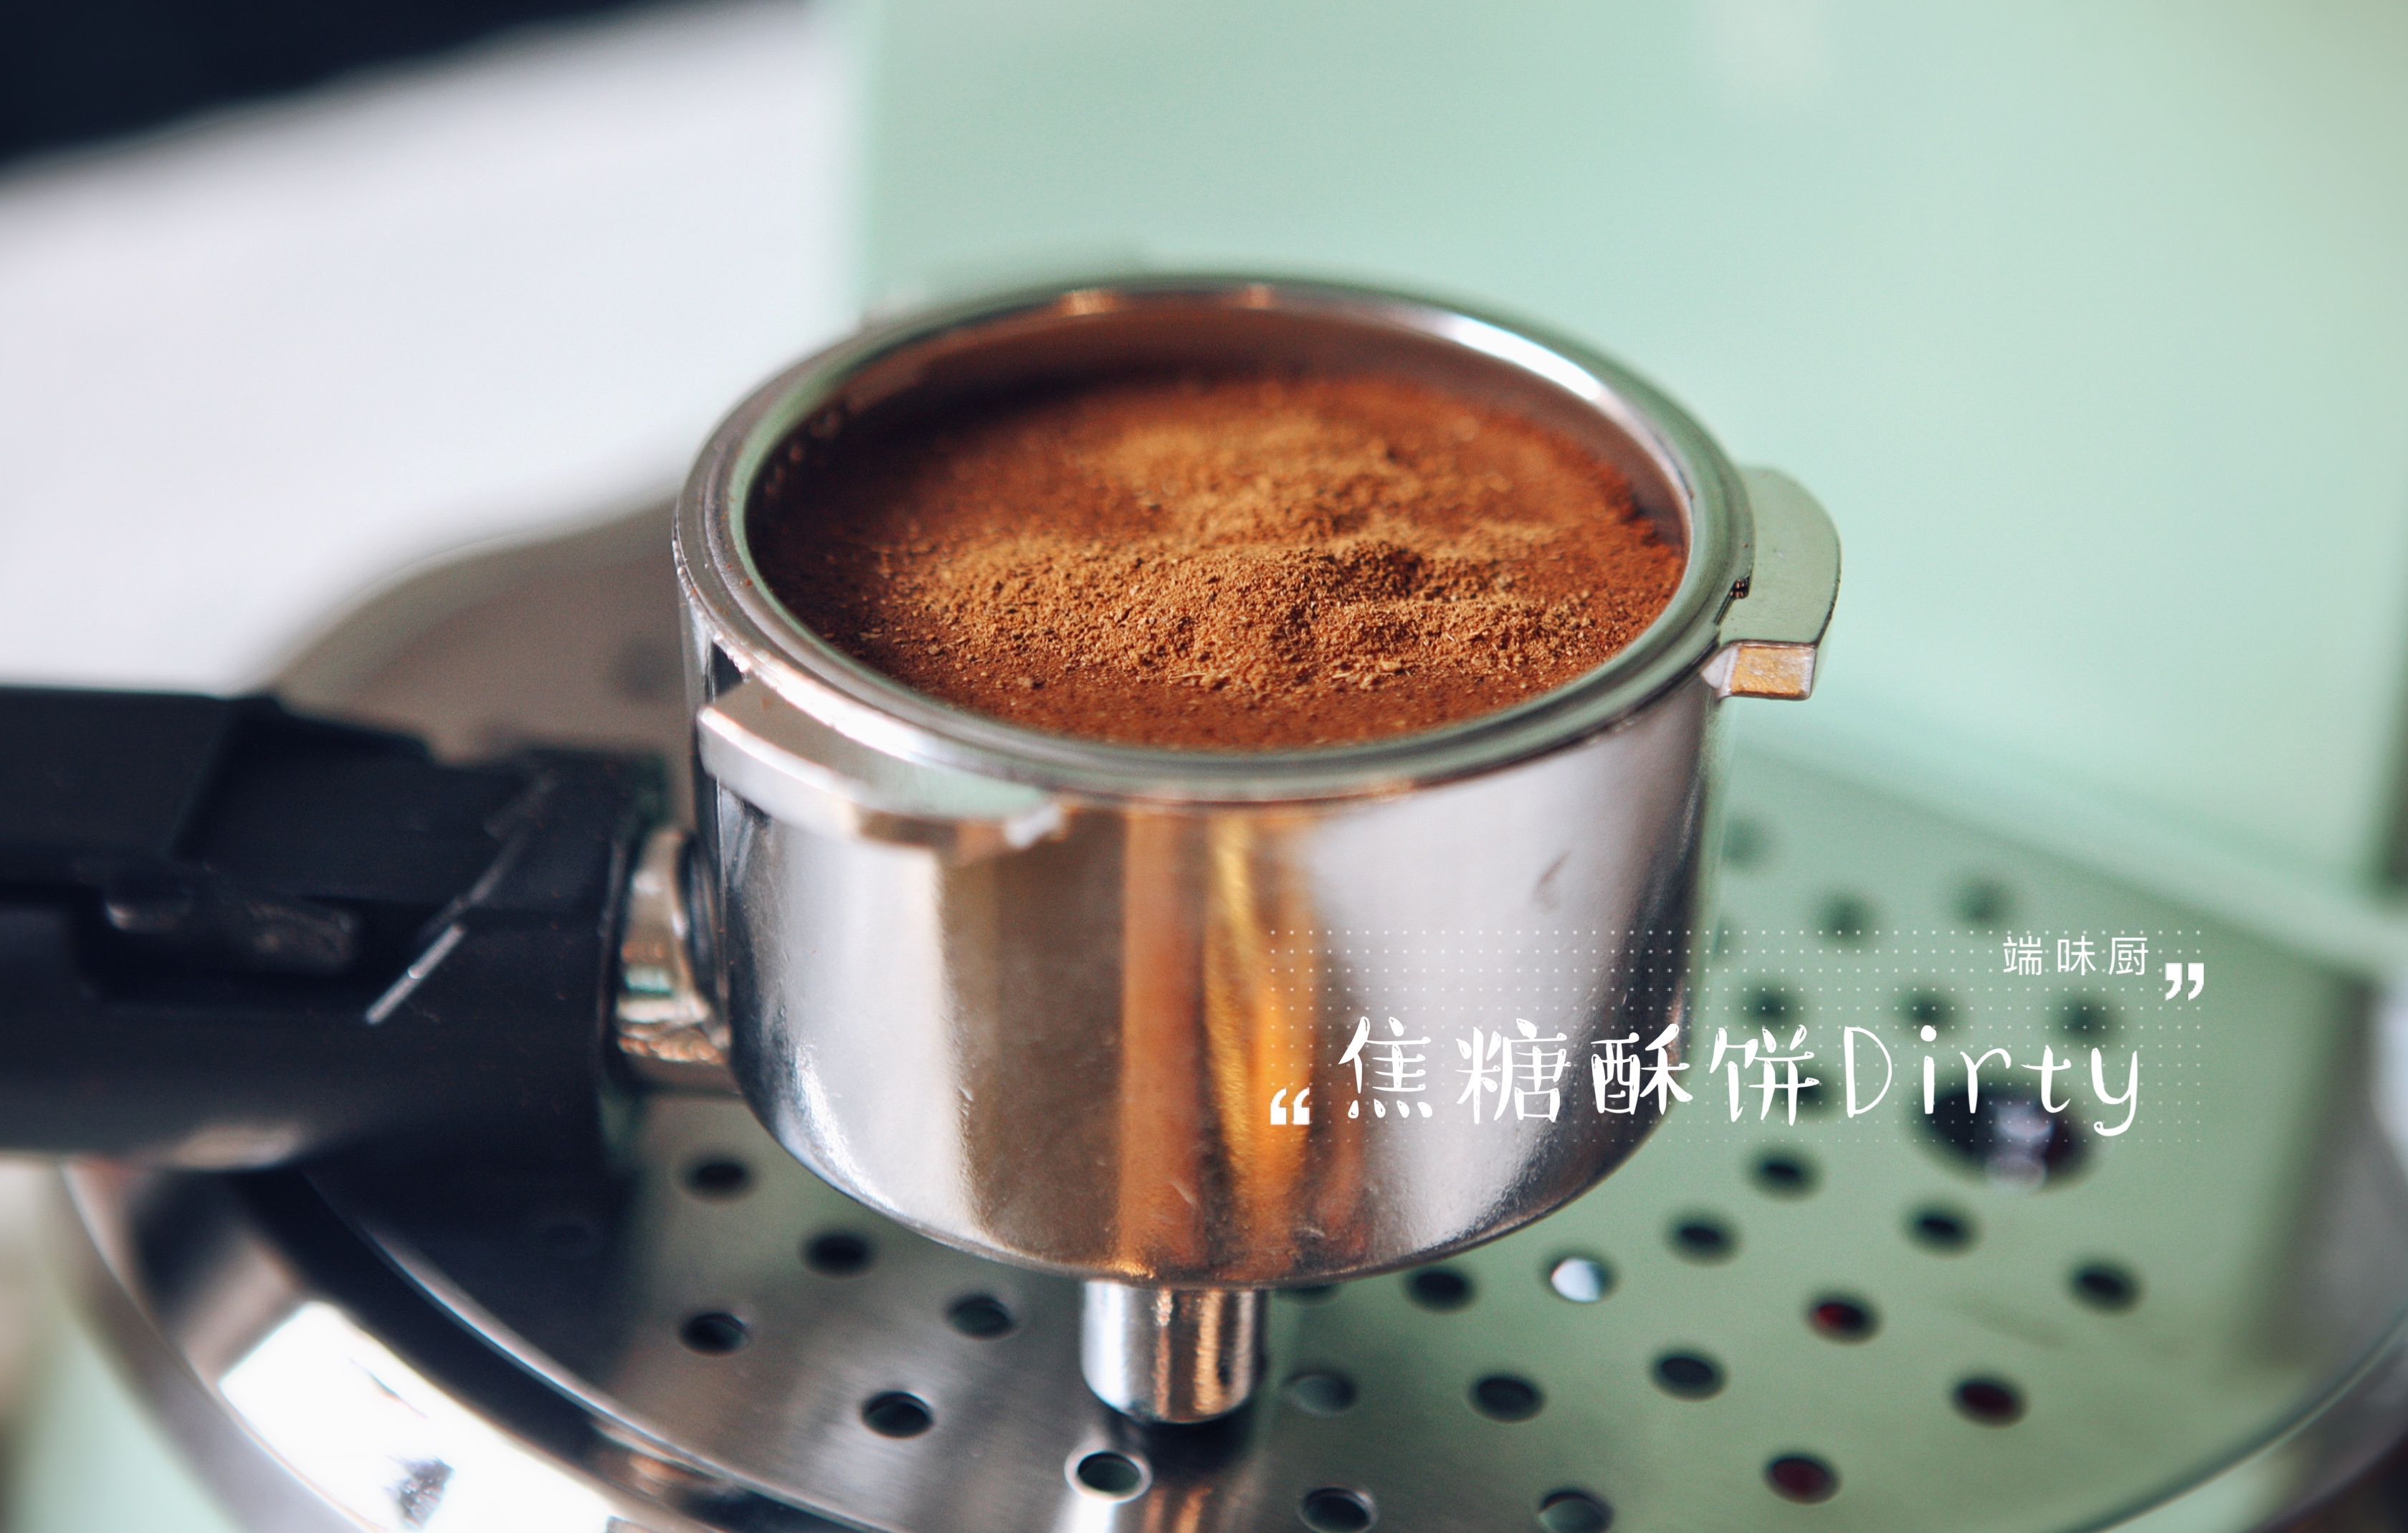 马克西姆咖啡机食谱——风靡整个韩国的网红咖啡——肉桂焦糖酥饼Dirty的做法 步骤7